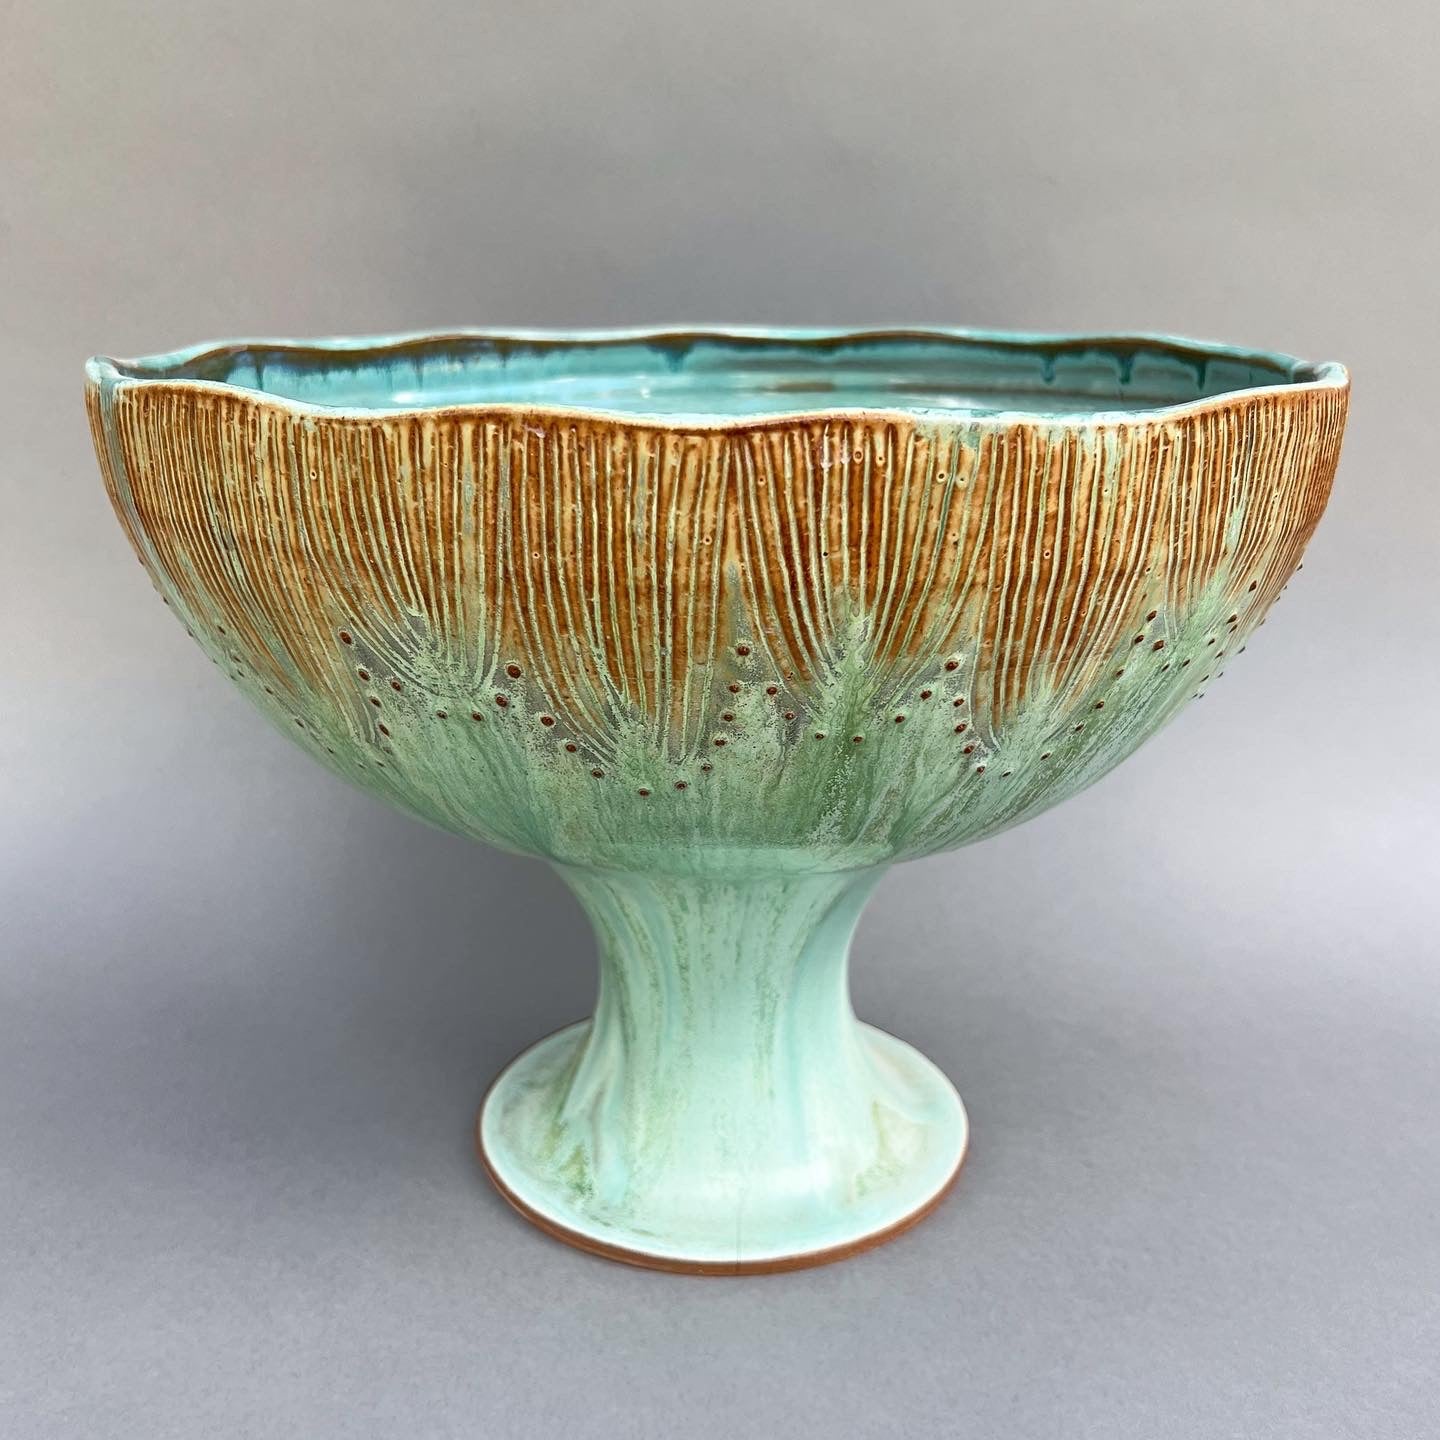 Flowing Copper Pedestal Bowl